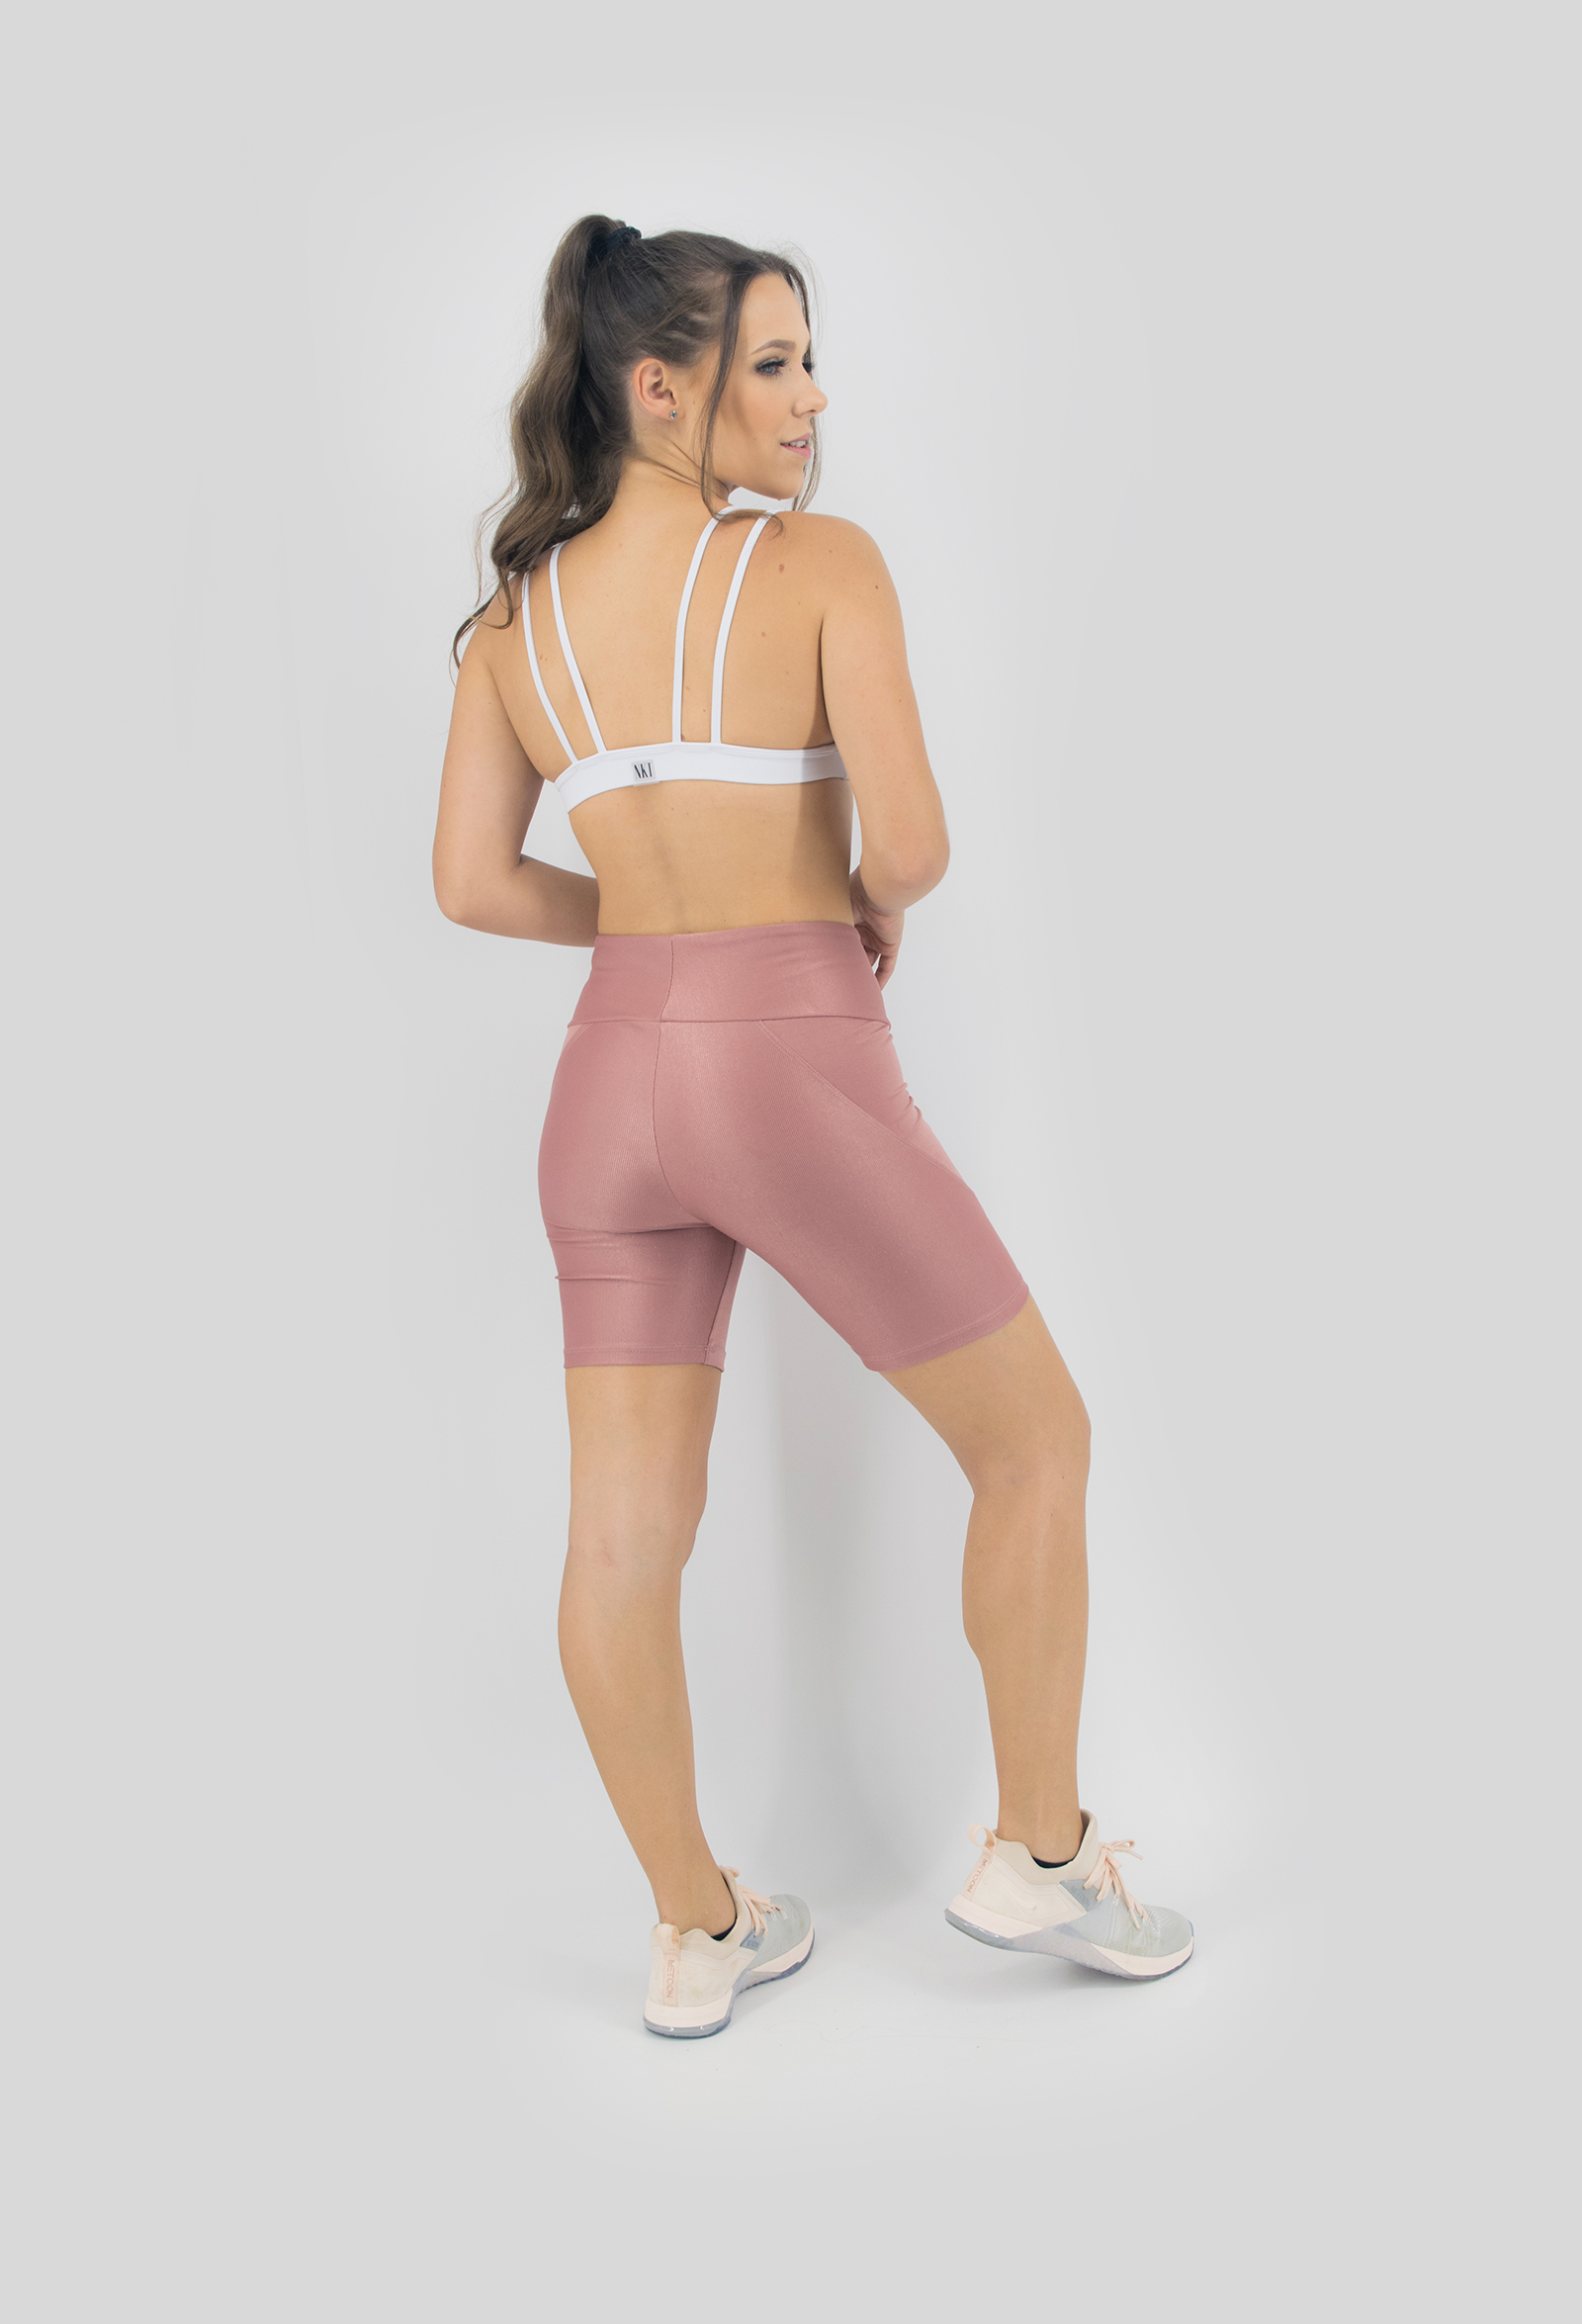 Bermuda Femme Rosa Boca, Coleção Move Your Body - NKT Fitwear Moda Fitness